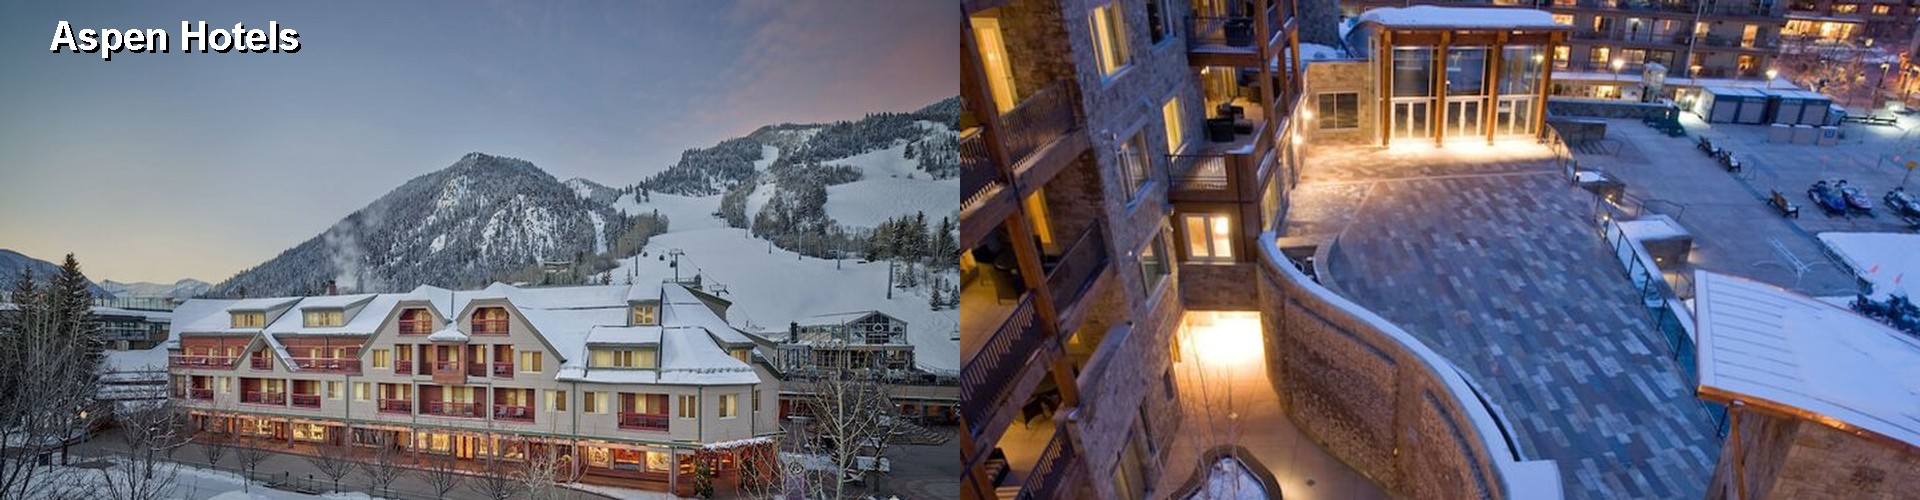 5 Best Hotels near Aspen